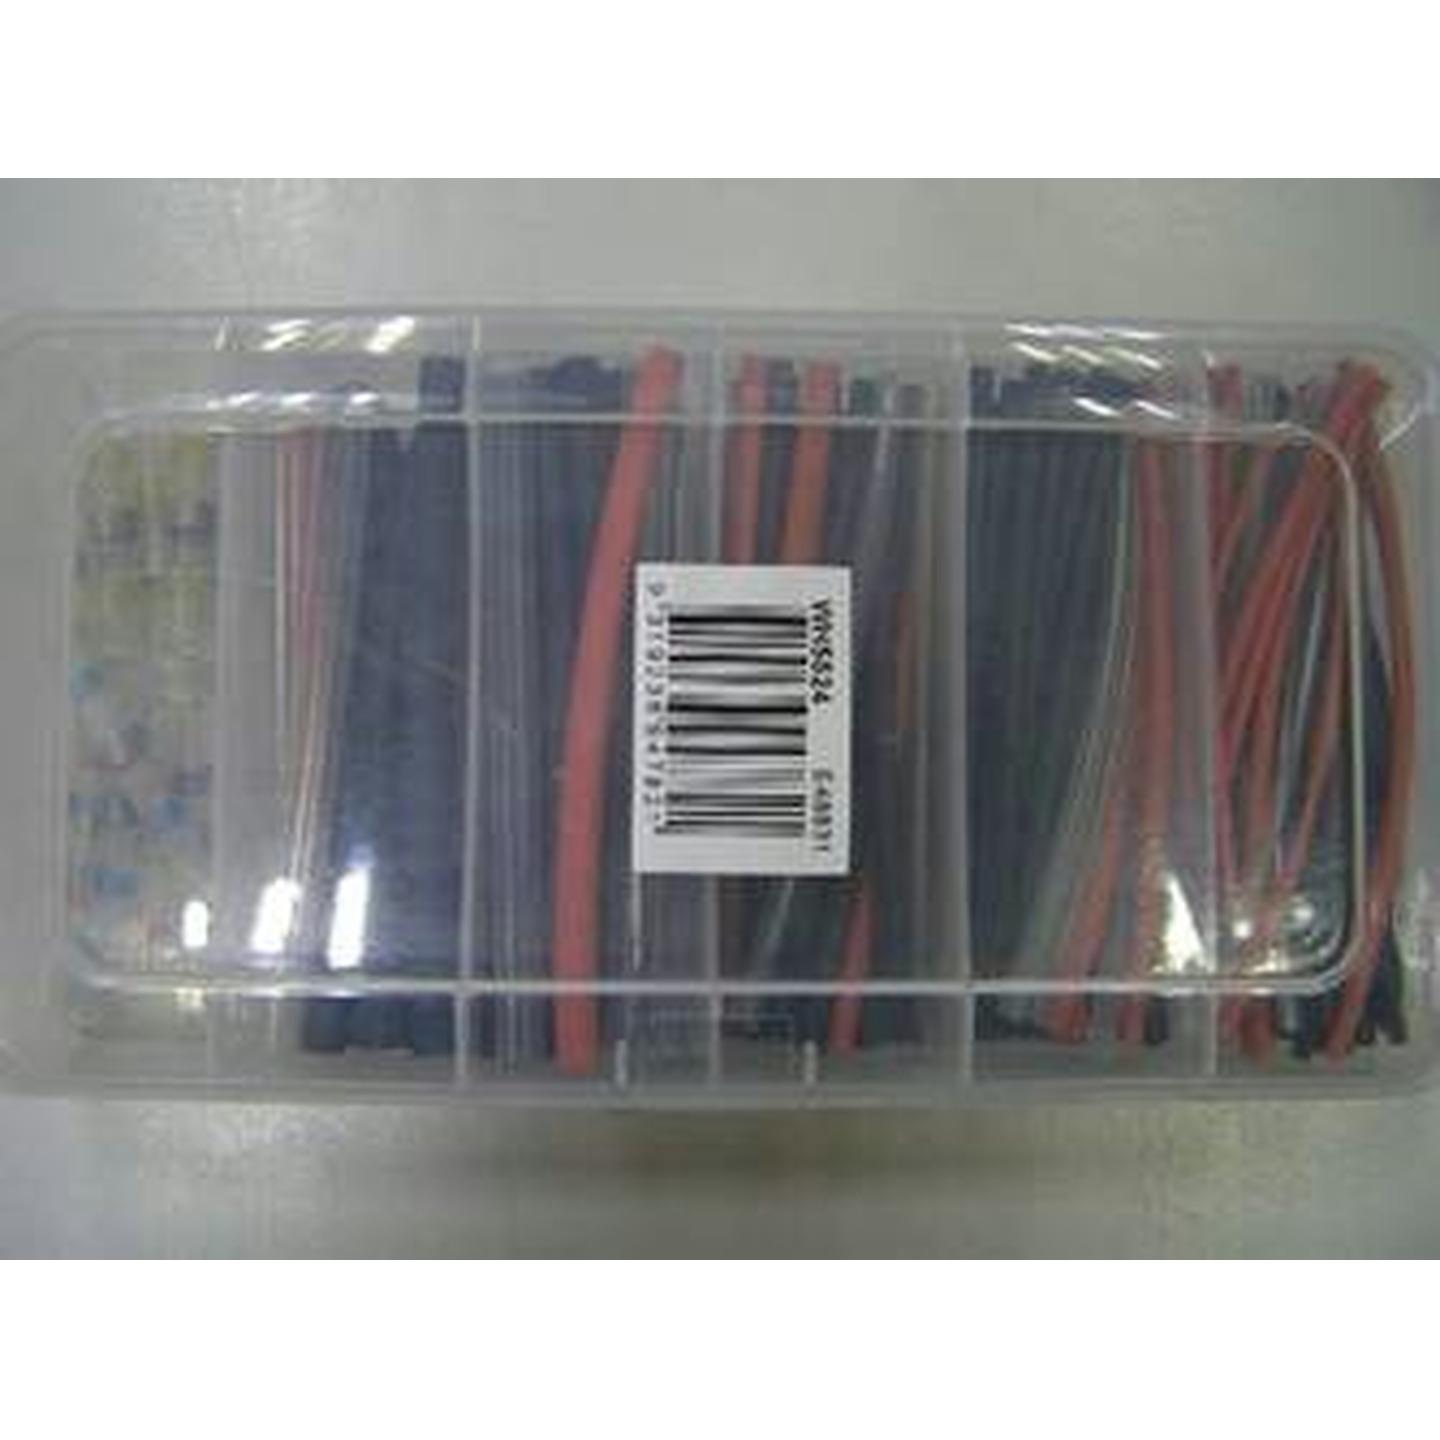 Pro Soldering Gas Kit with Wire Strippers/Cutters/Heatshrink